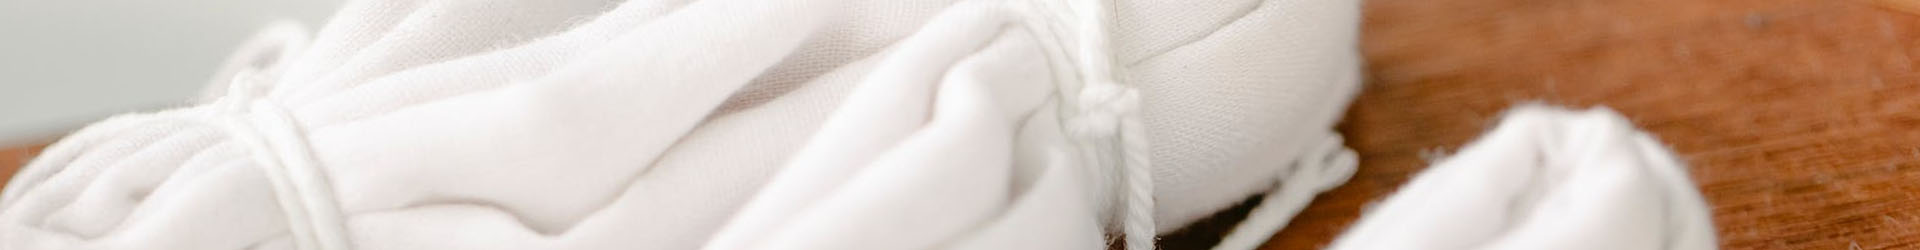 servilletas enrolladas de tela con cuerdas blancas limpias y bien cuidadas